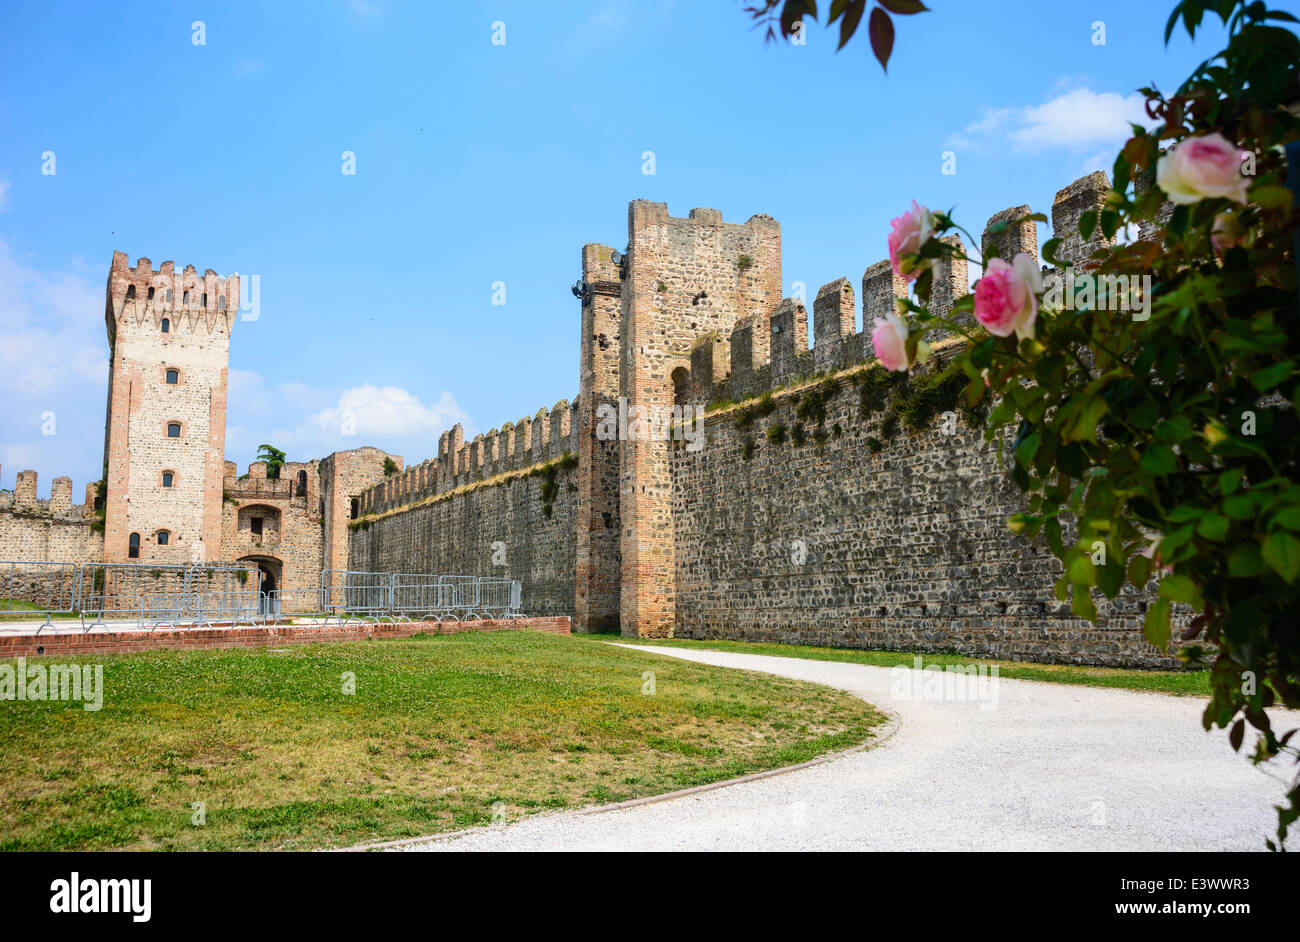 En este castillo de una ciudad medieval amurallada en la región de Veneto del norte de Italia Foto de stock